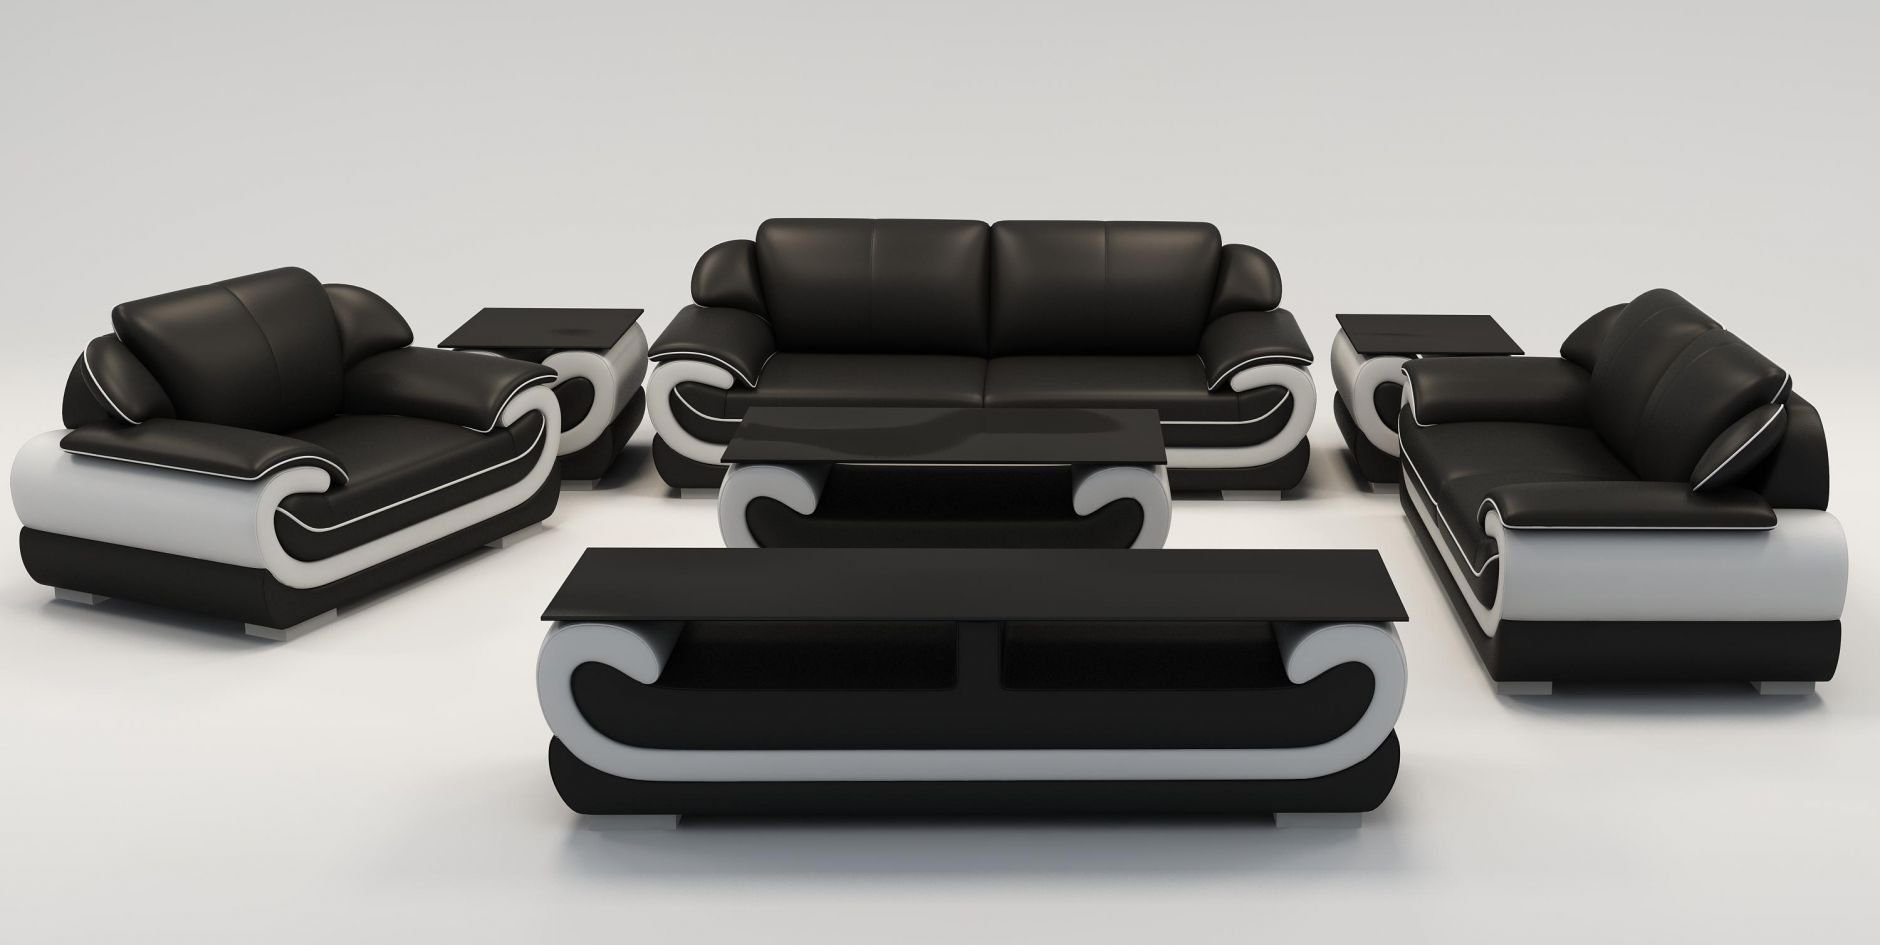 JVmoebel Sofa Ledersofa Couch Wohnlandschaft 3+1+1 Sitzer Garnitur Design, Made in Europe Schwarz/Weiß